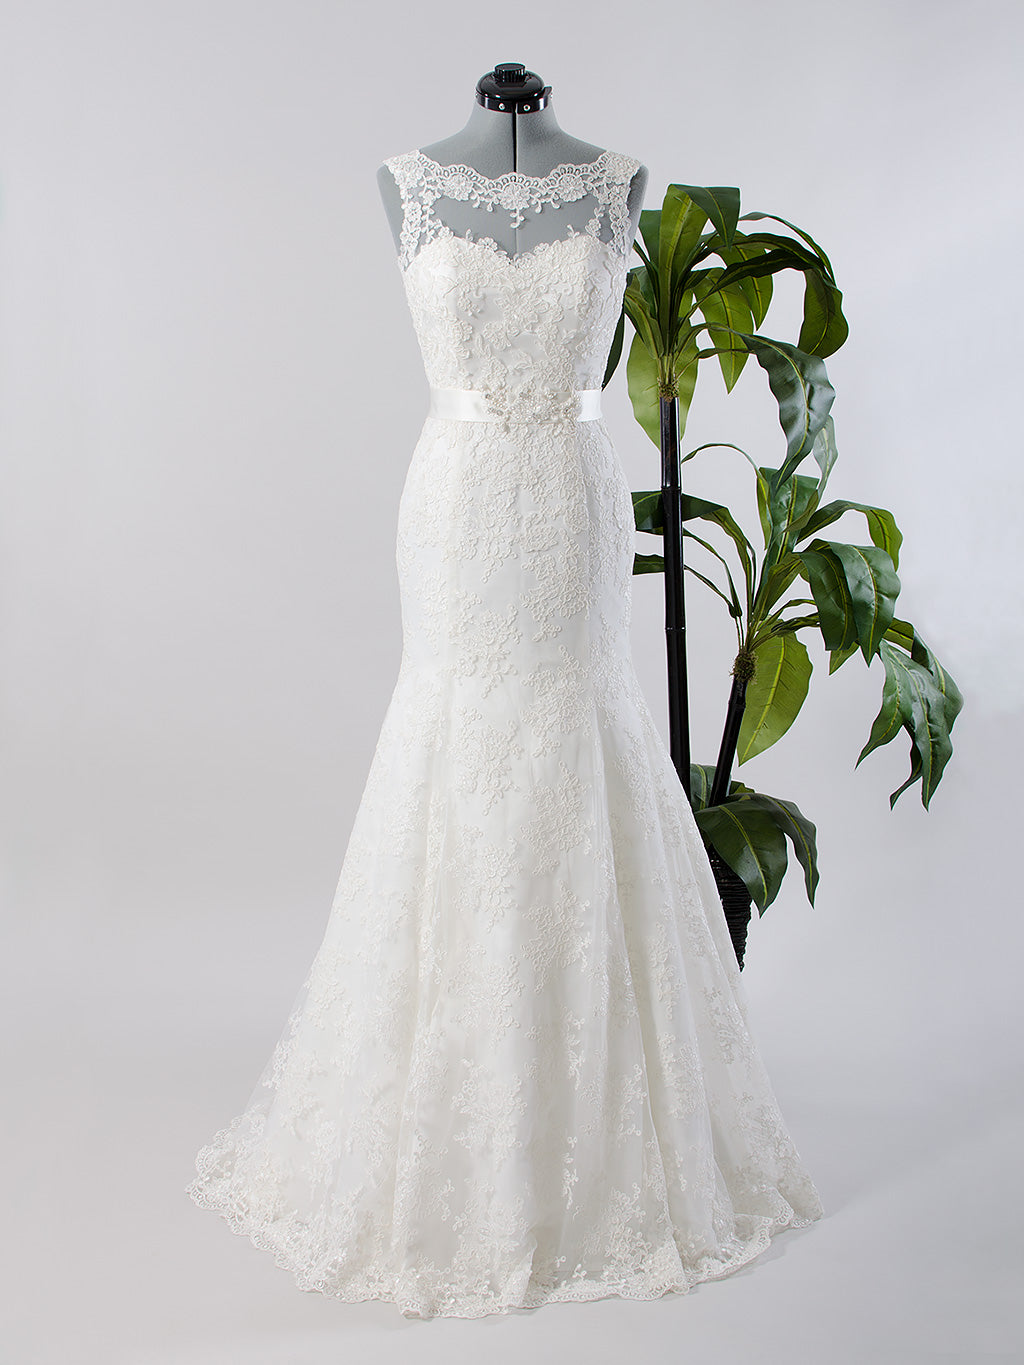 Ivory sleeveless lace wedding dress with mermaid skirt 4017